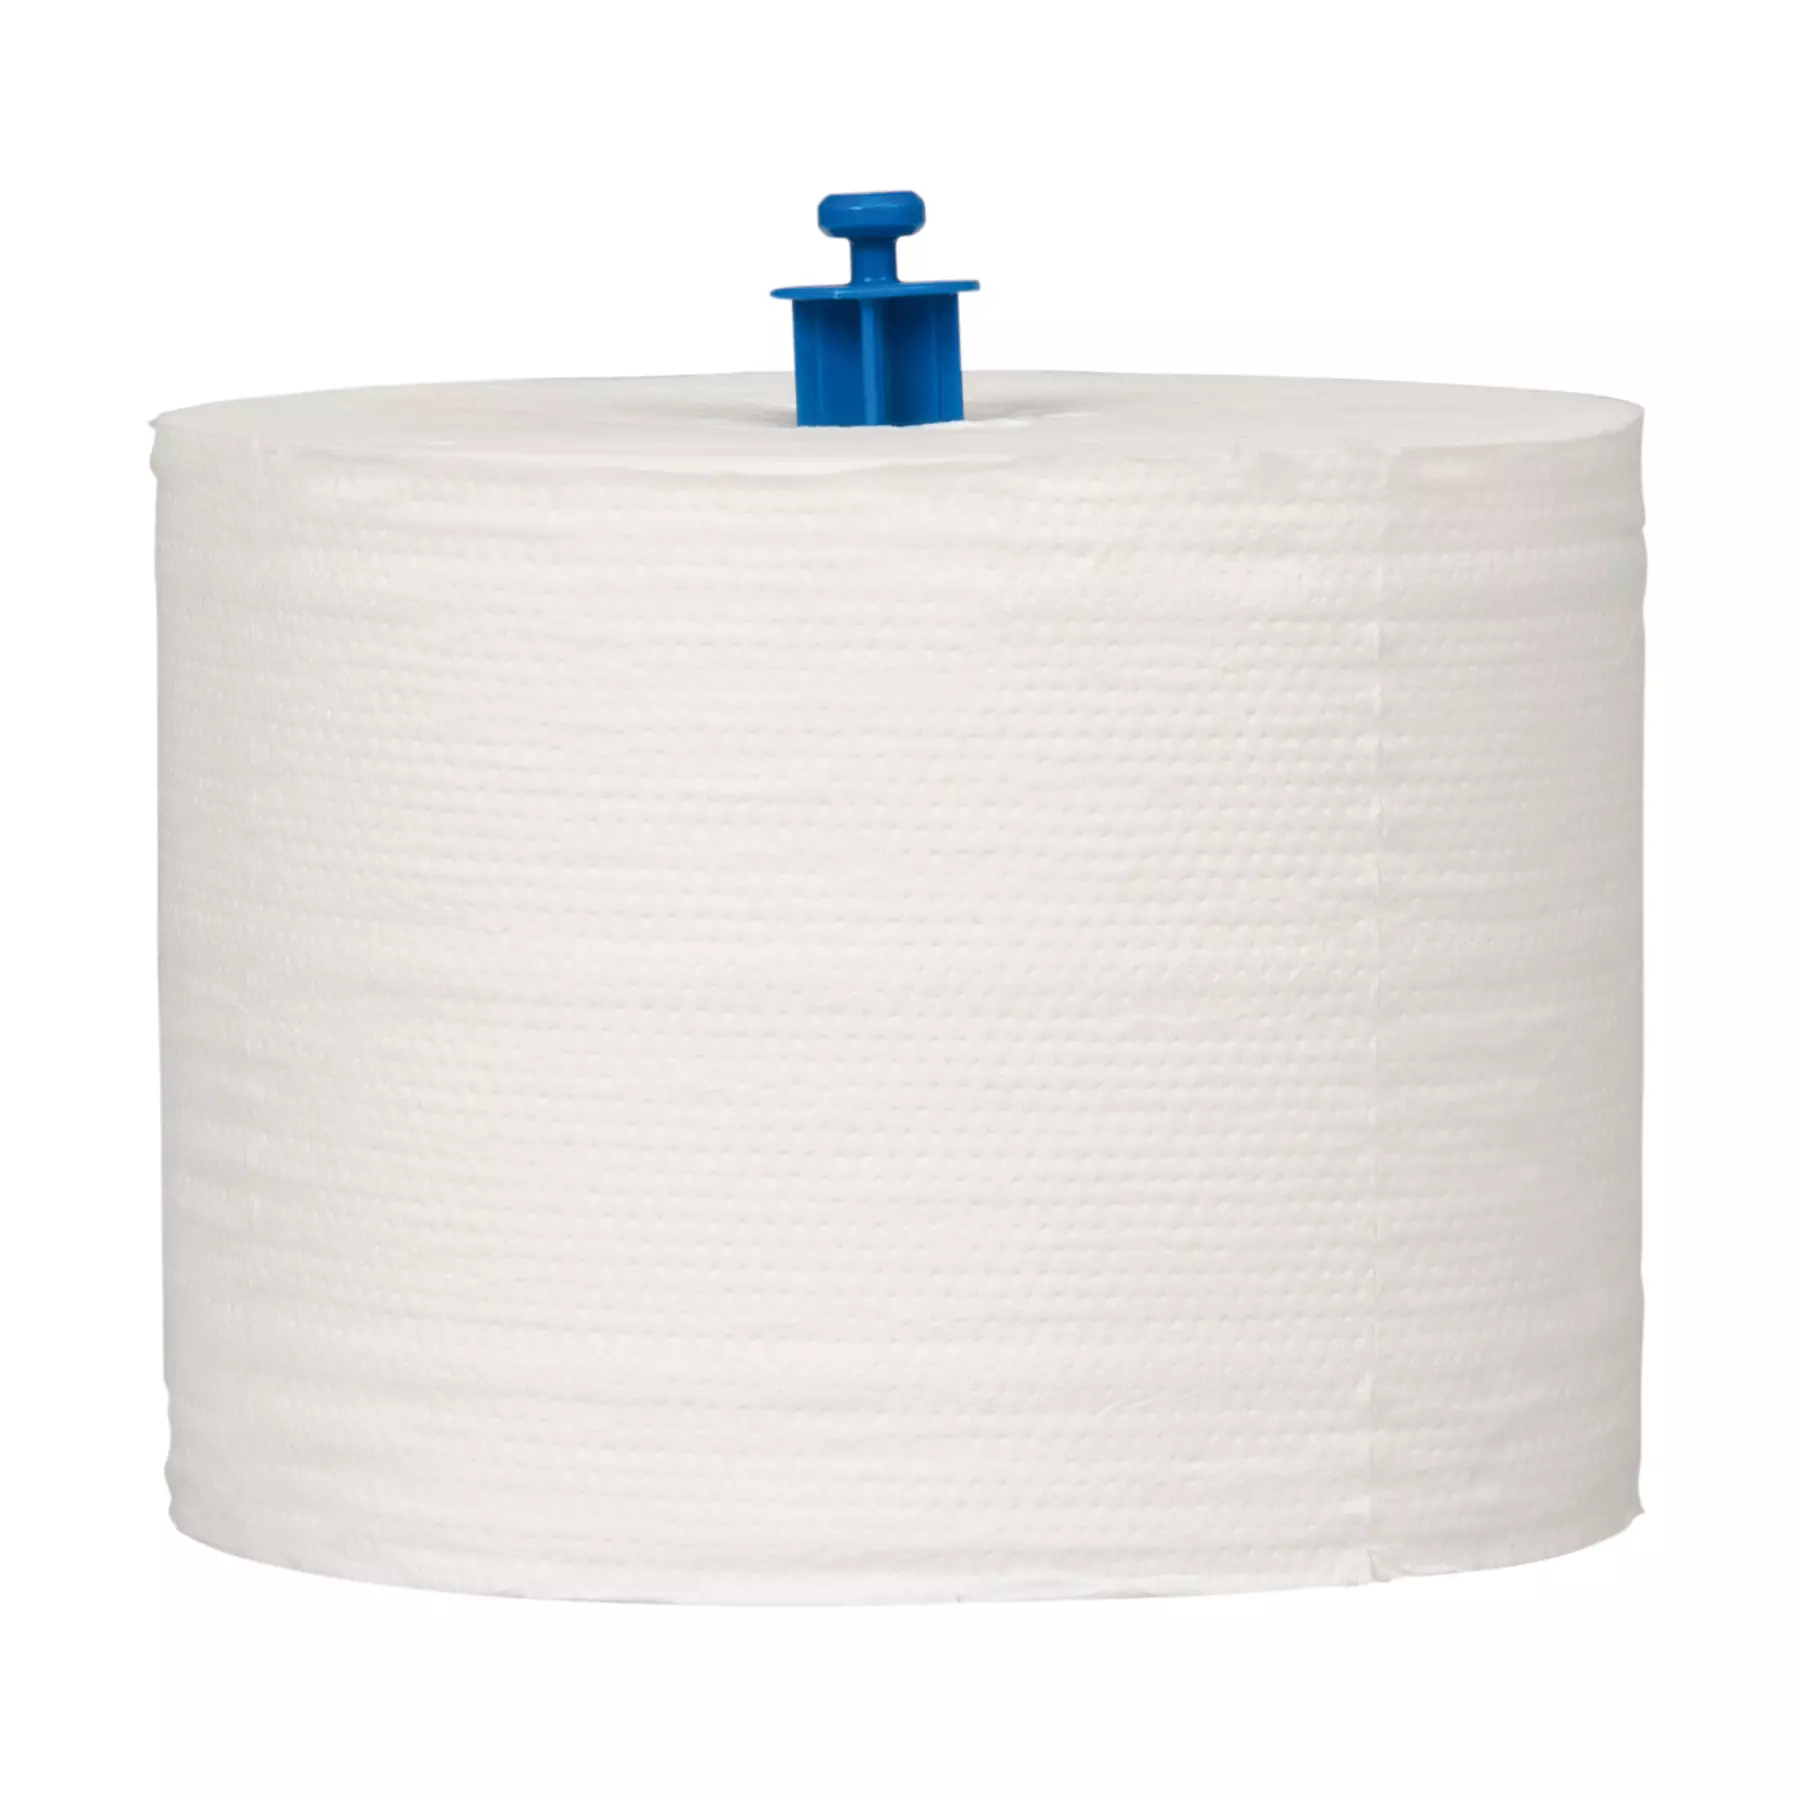 Zellstoff-Toilettenpapier für Toilettenpapierspender RATIO